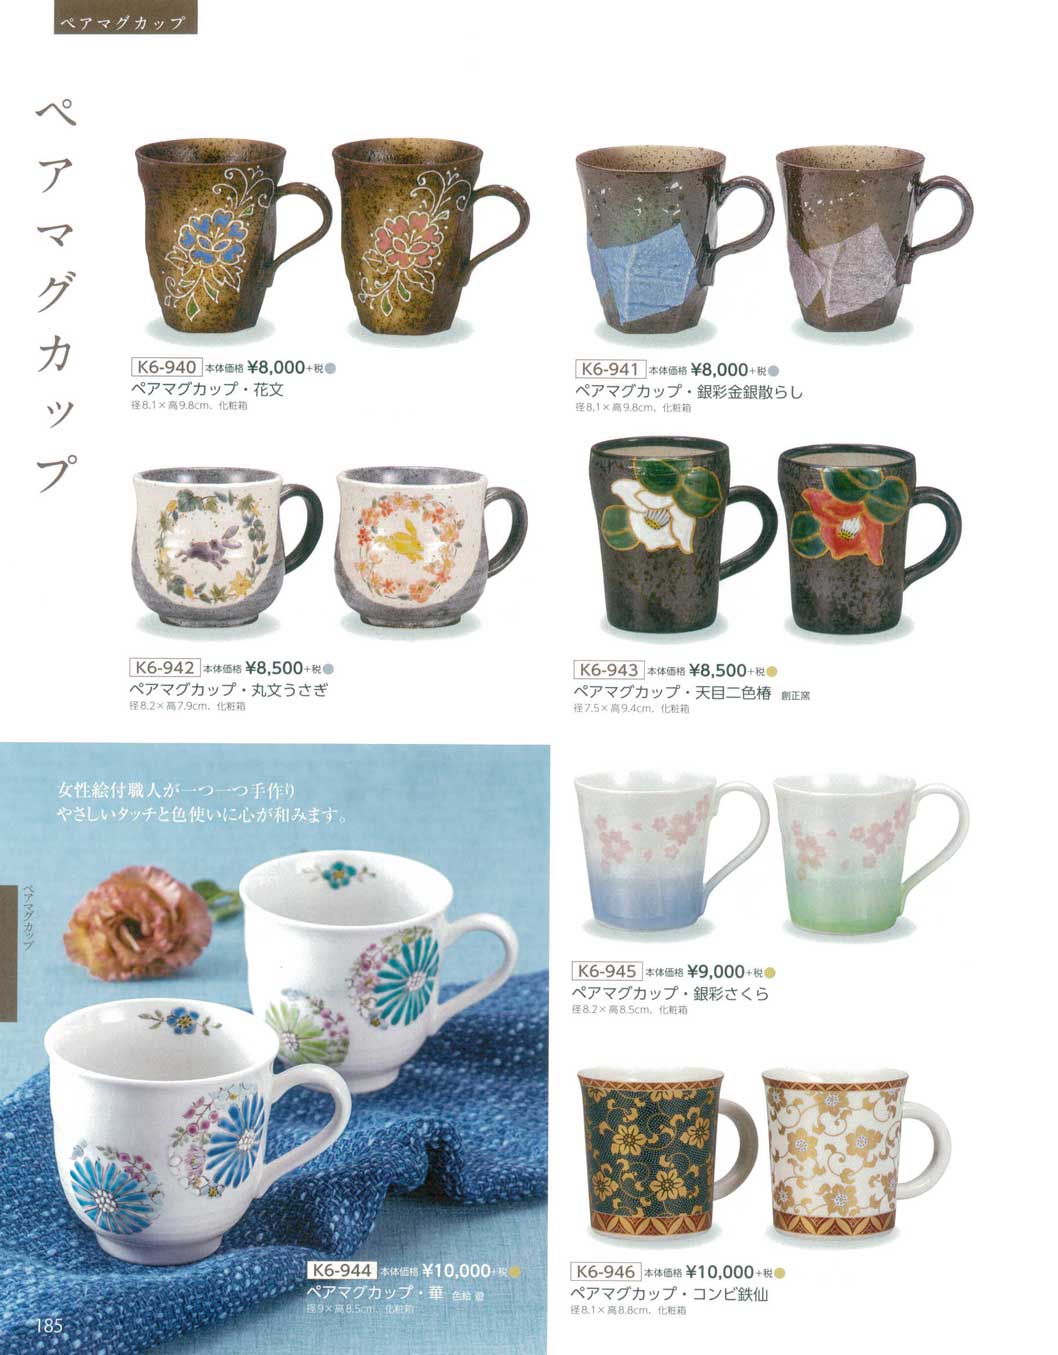 食器 ペアマグカップKutani-ware, Couple of Mugs 九谷焼総合カタログ 